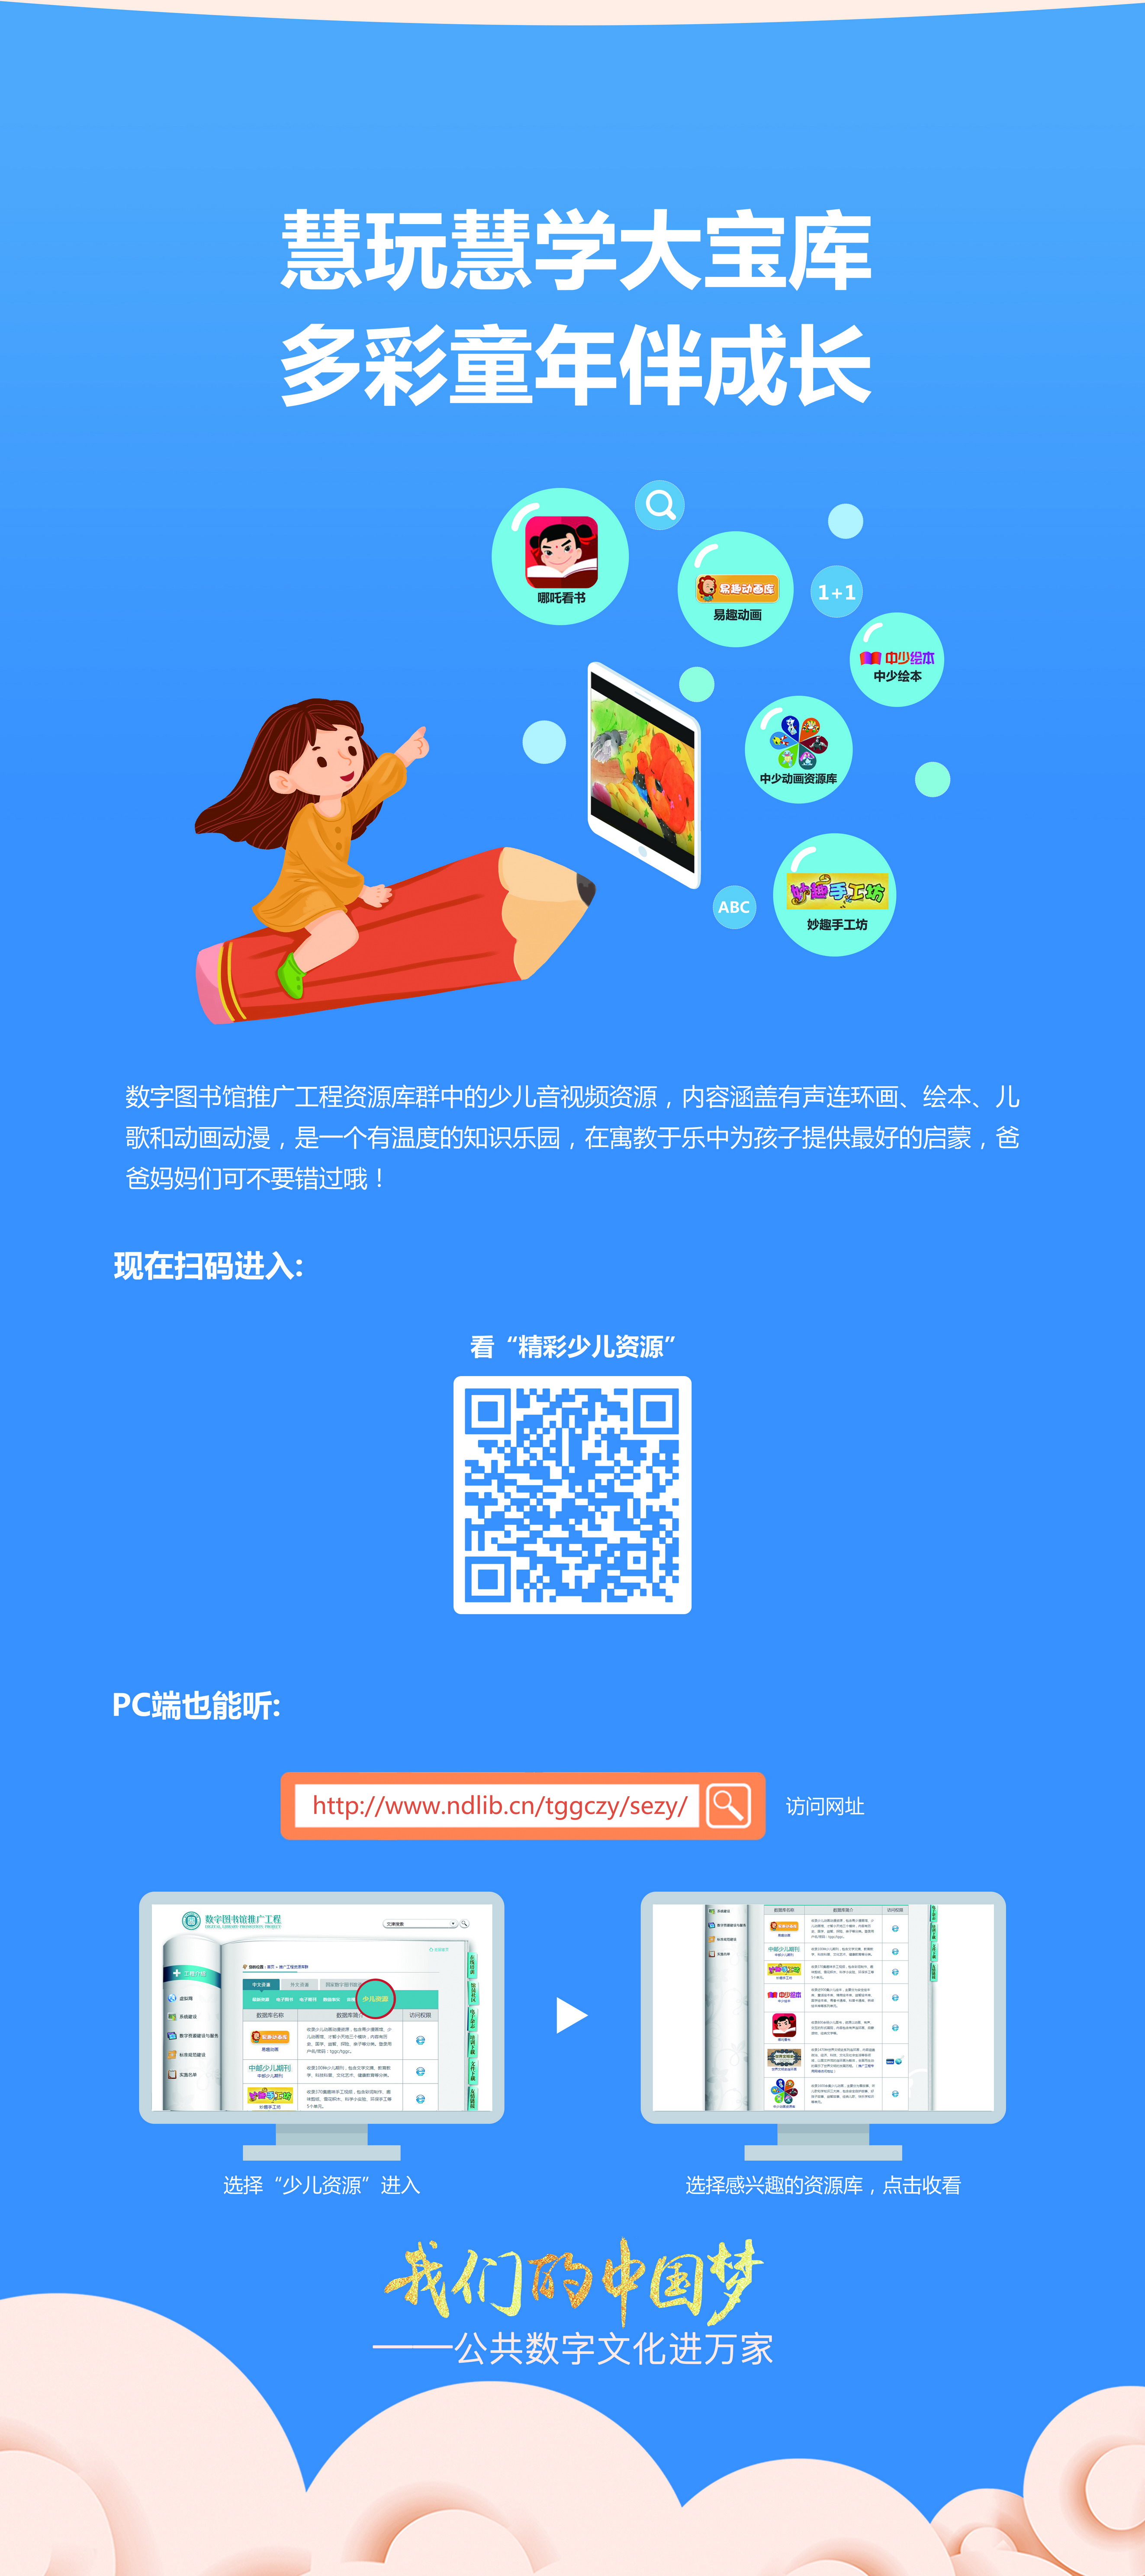 我们的中国梦——公共数字文化进万家活动线下主题展览_图5